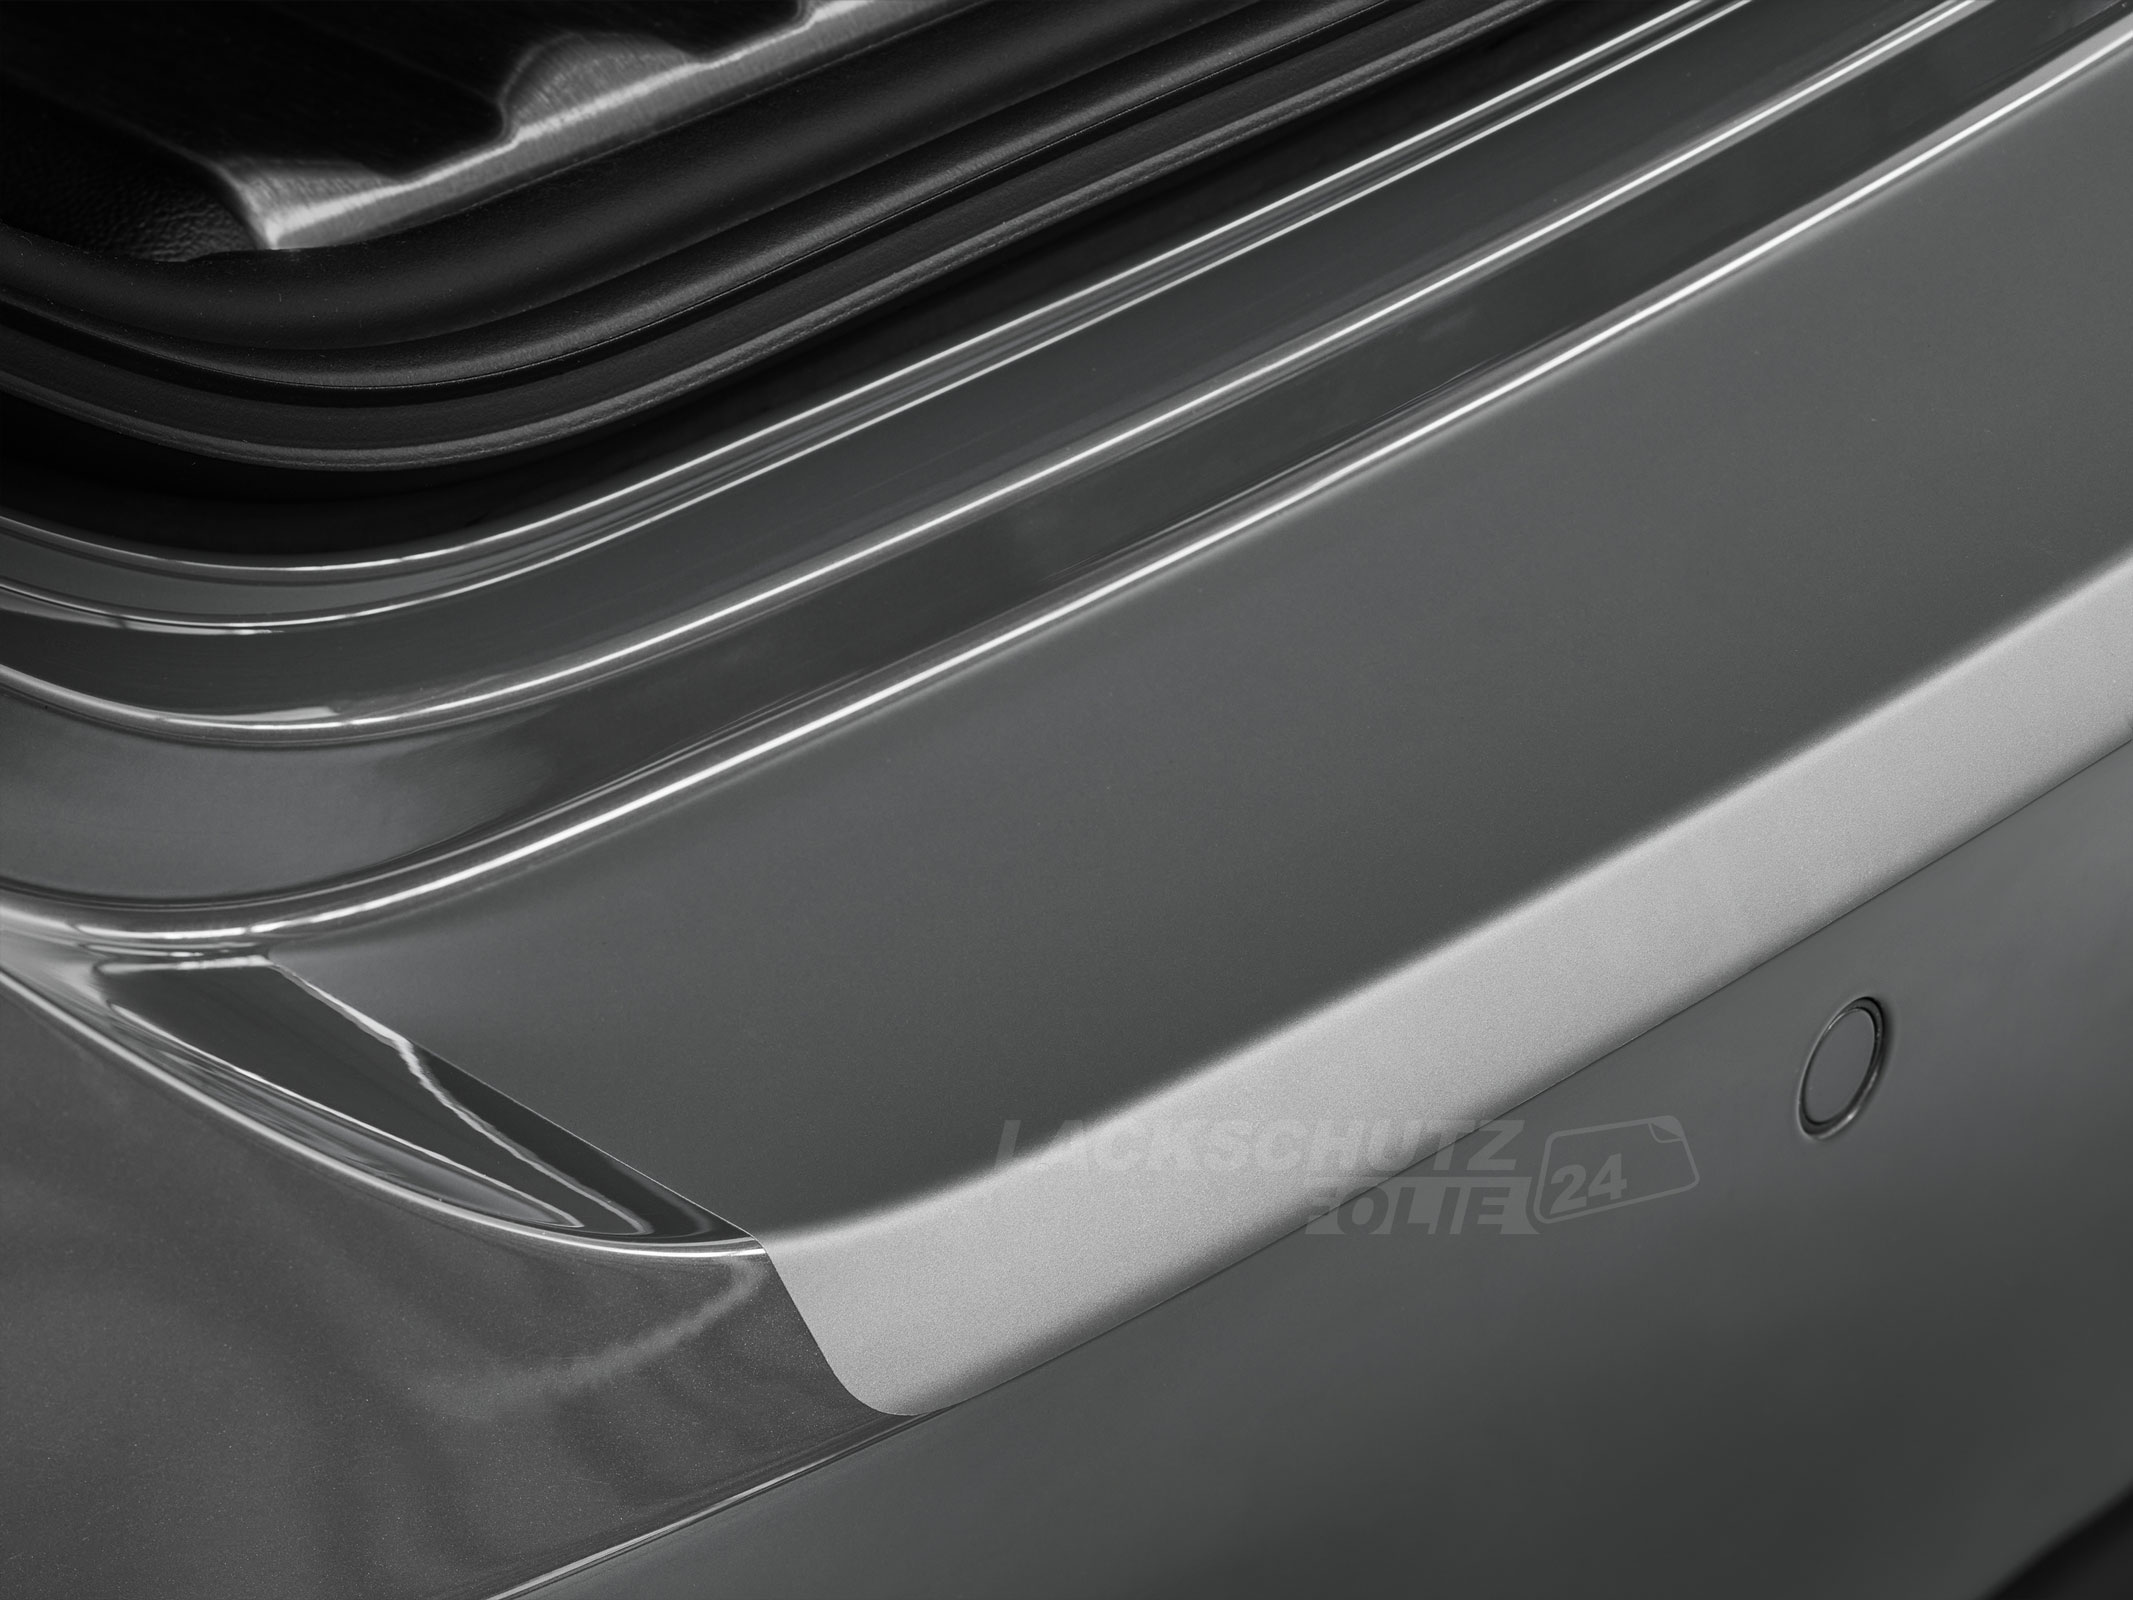 Ladekantenschutzfolie - Transparent Glatt MATT 110 µm stark  für Skoda Octavia Limousine (III) Typ 5E, Facelift, BJ 11/2016-2020